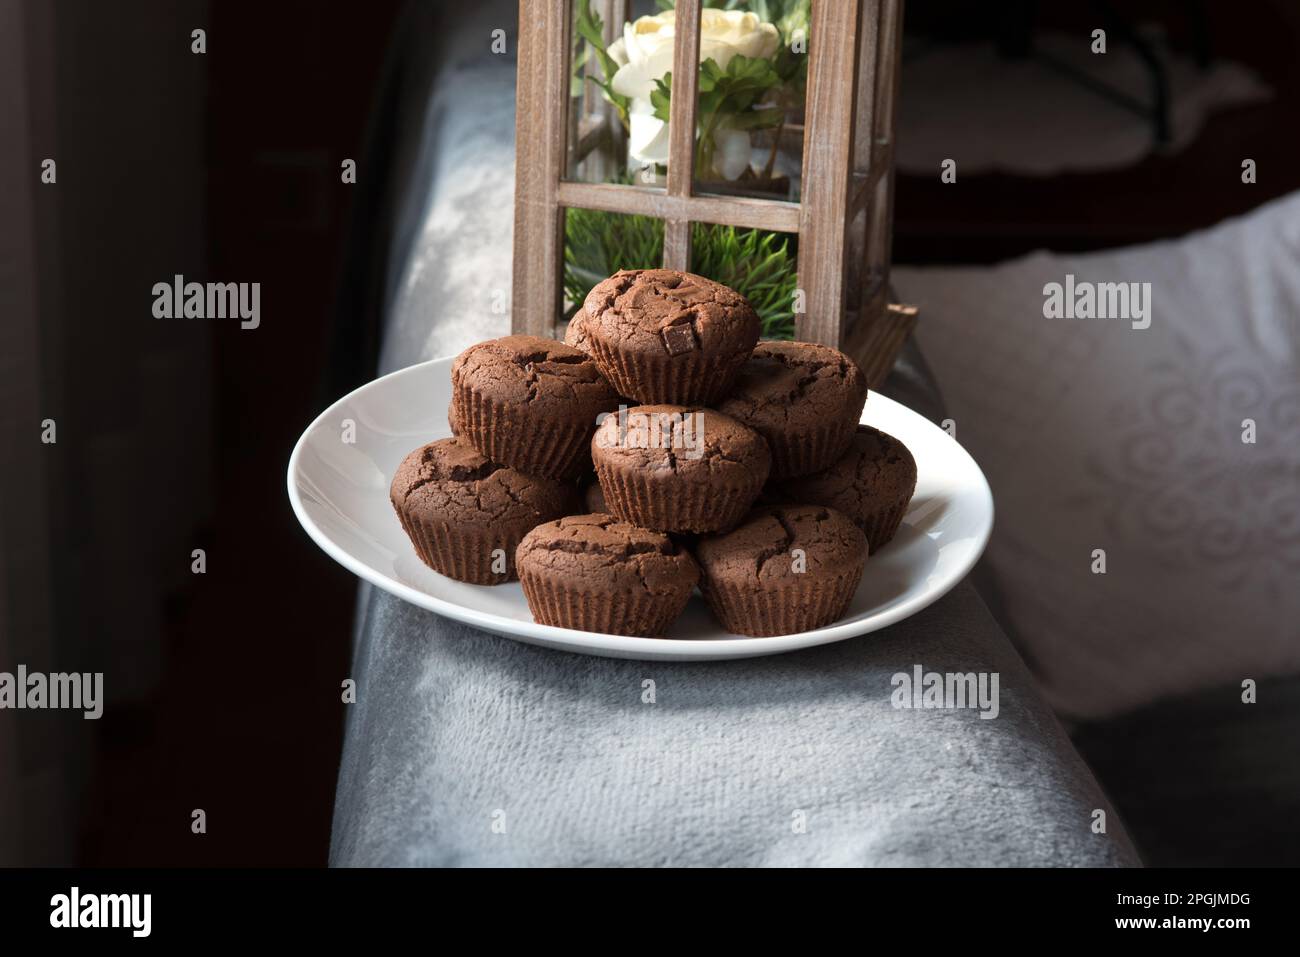 un bel piatto di Muffin appena sfornati, Muffin al cacao con gocce di cioccolata, dolci al cioccolato su un piatto Stockfoto